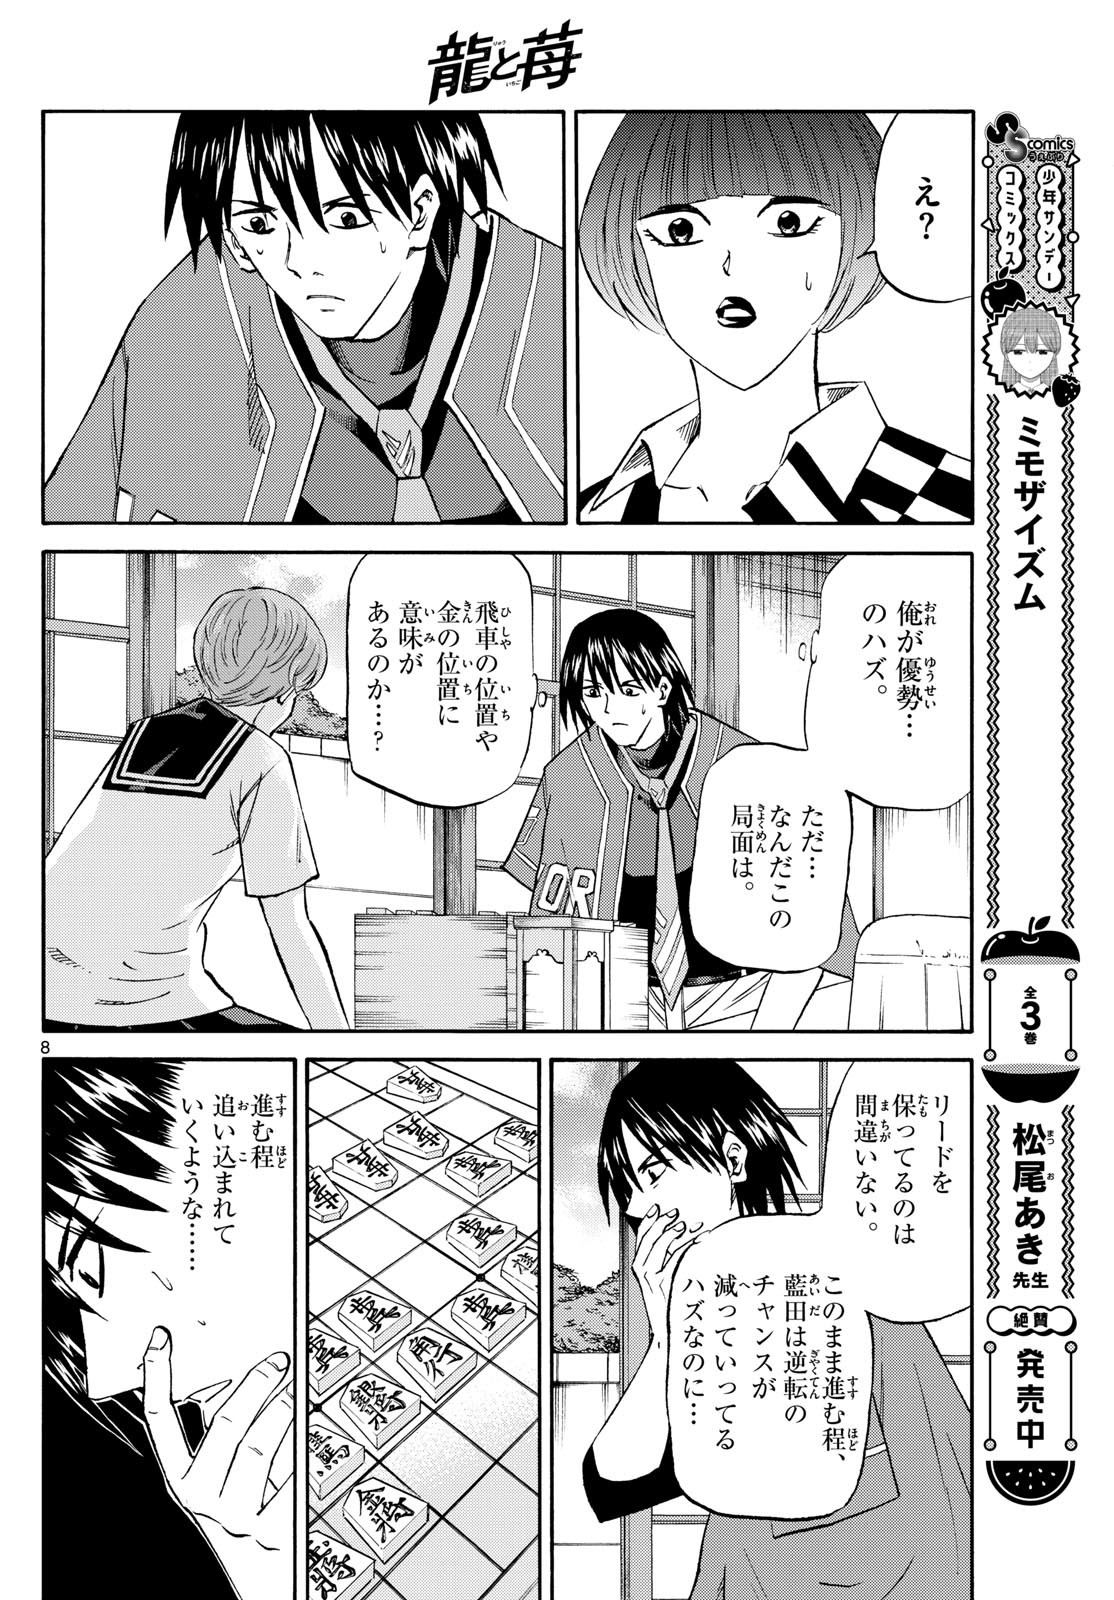 Ryu-to-Ichigo - Chapter 198 - Page 8